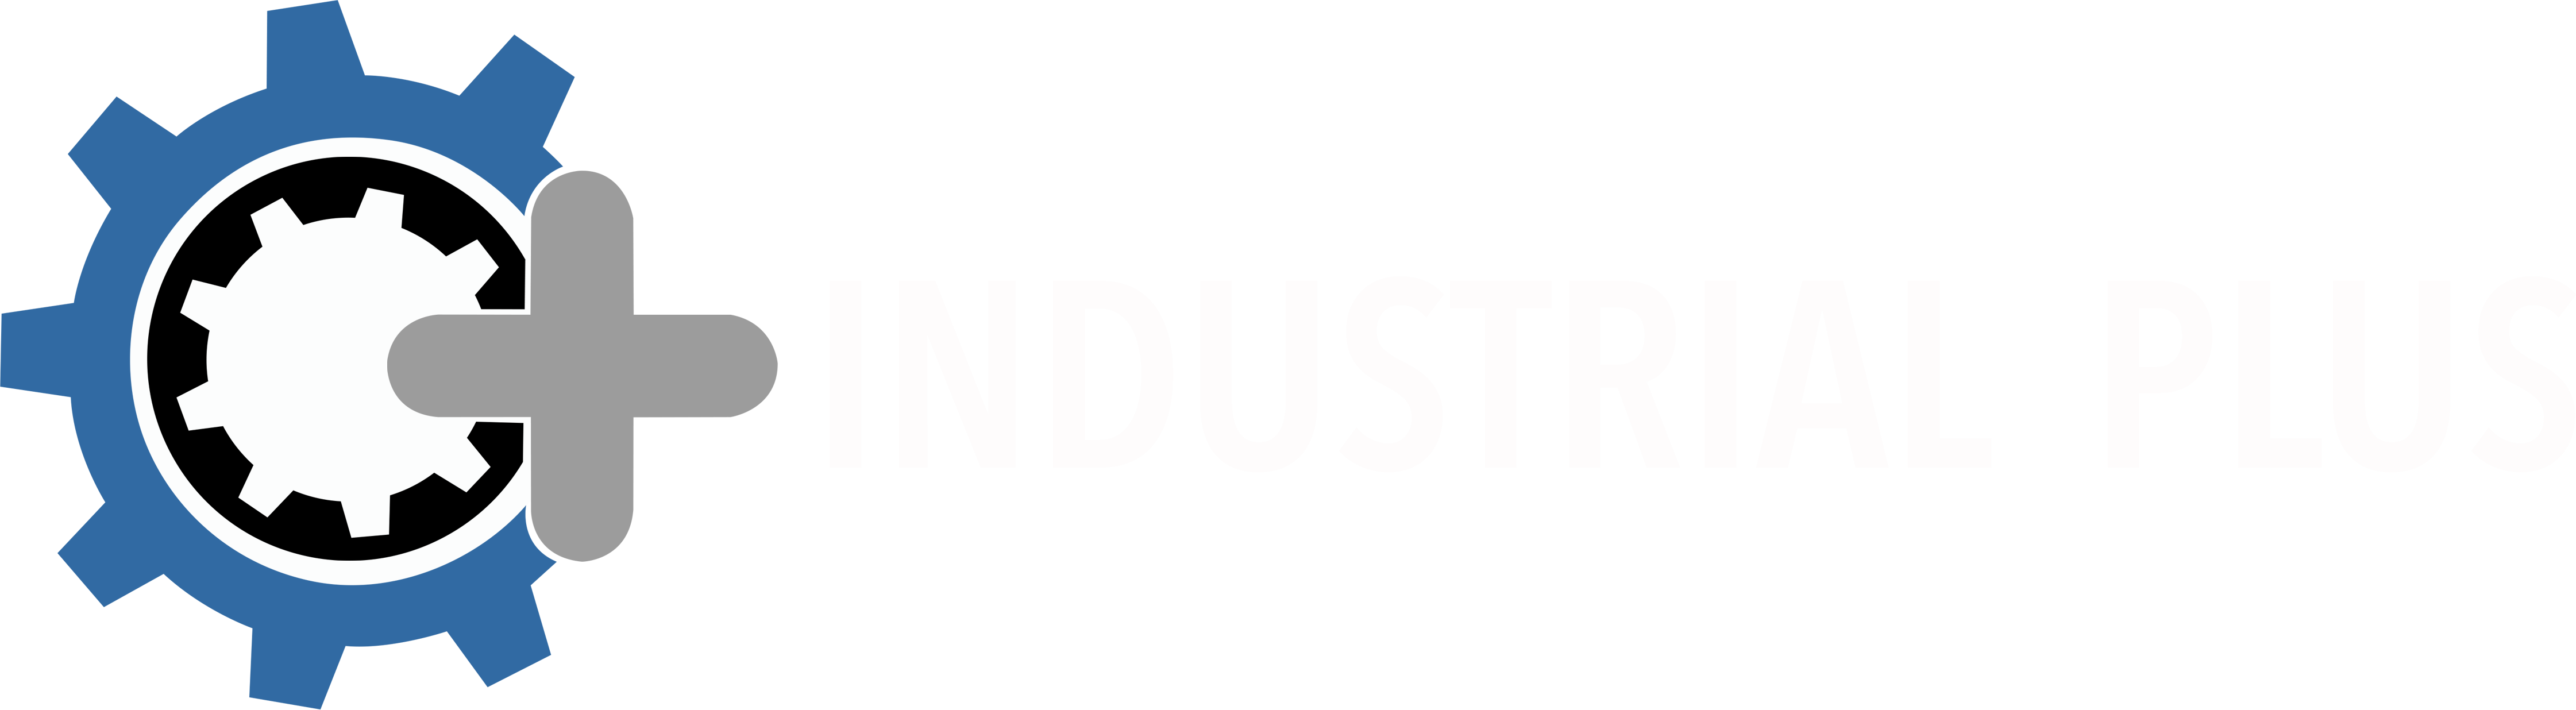 Industrial Plus